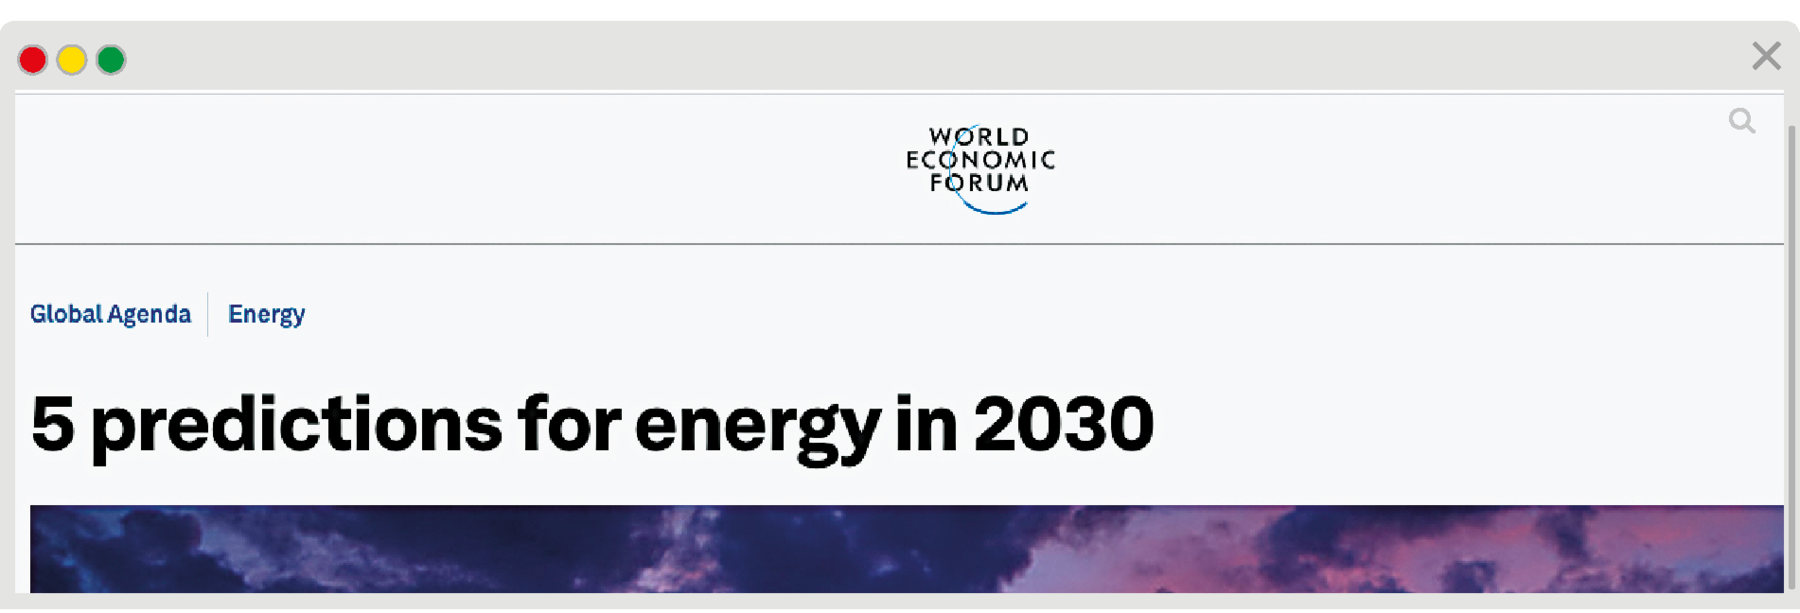 Reprodução de página da internet.  Na parte superior, texto: World Economic Forum. Na parte inferior, à esquerda, texto: Global Agenda, Energy. Mais abaixo, título: five predictions for energy in two thousand and thirty.